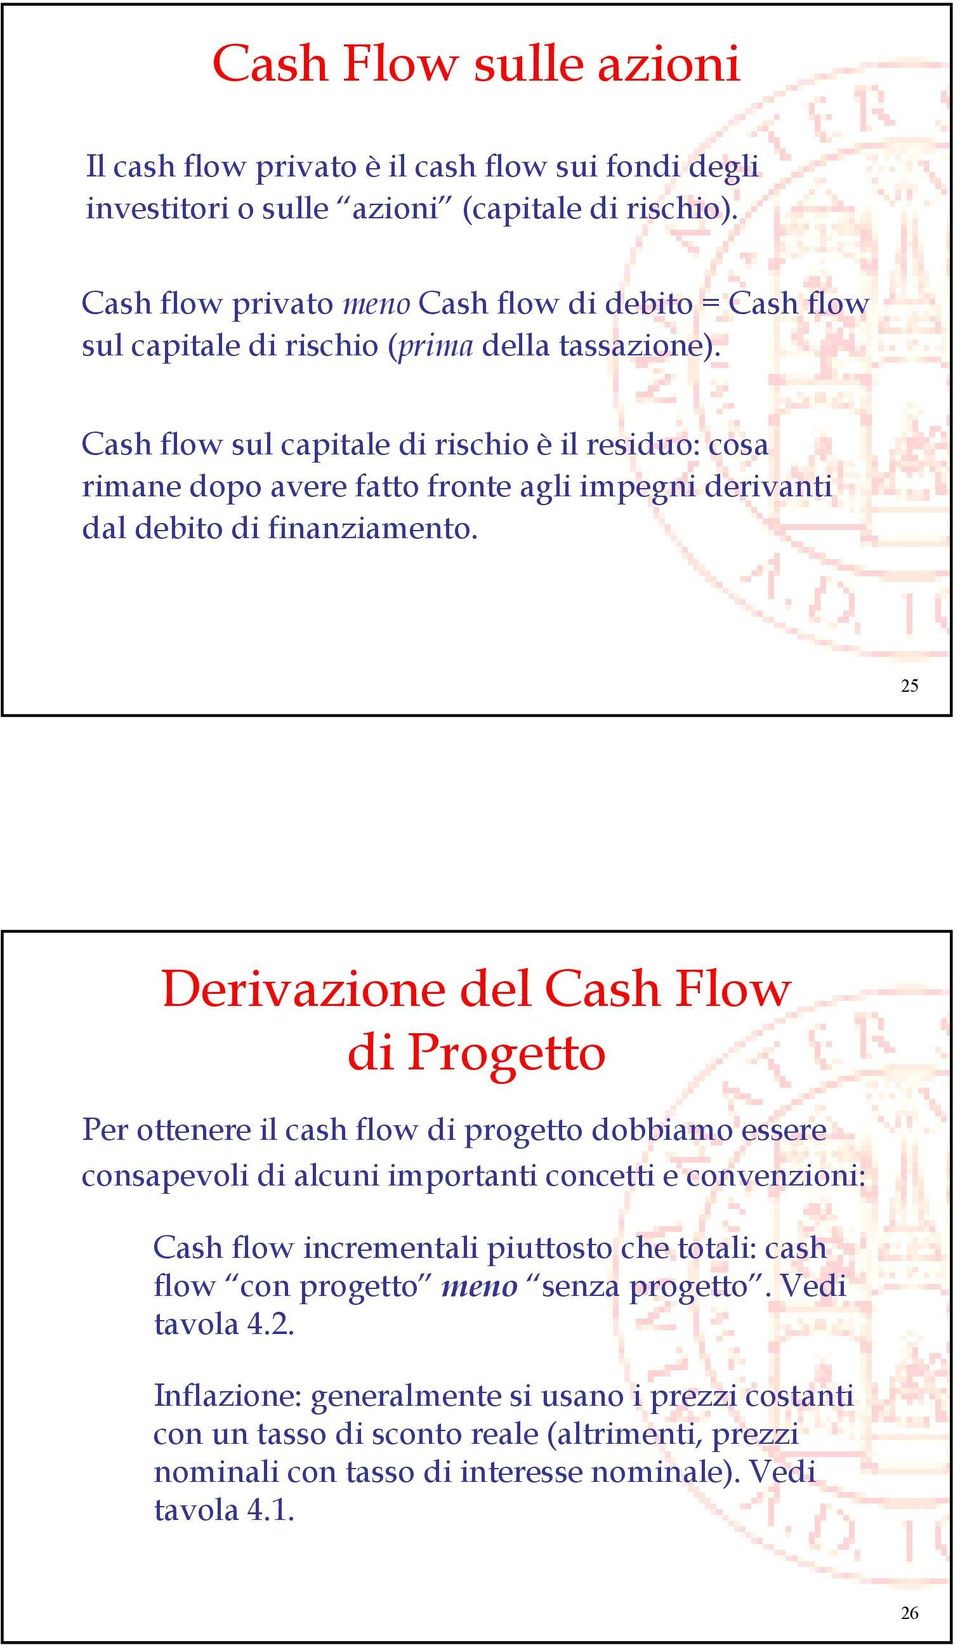 Cash flow sul capitale di rischio è il residuo: cosa rimane dopo avere fatto fronte agli impegni derivanti dal debito di finanziamento.